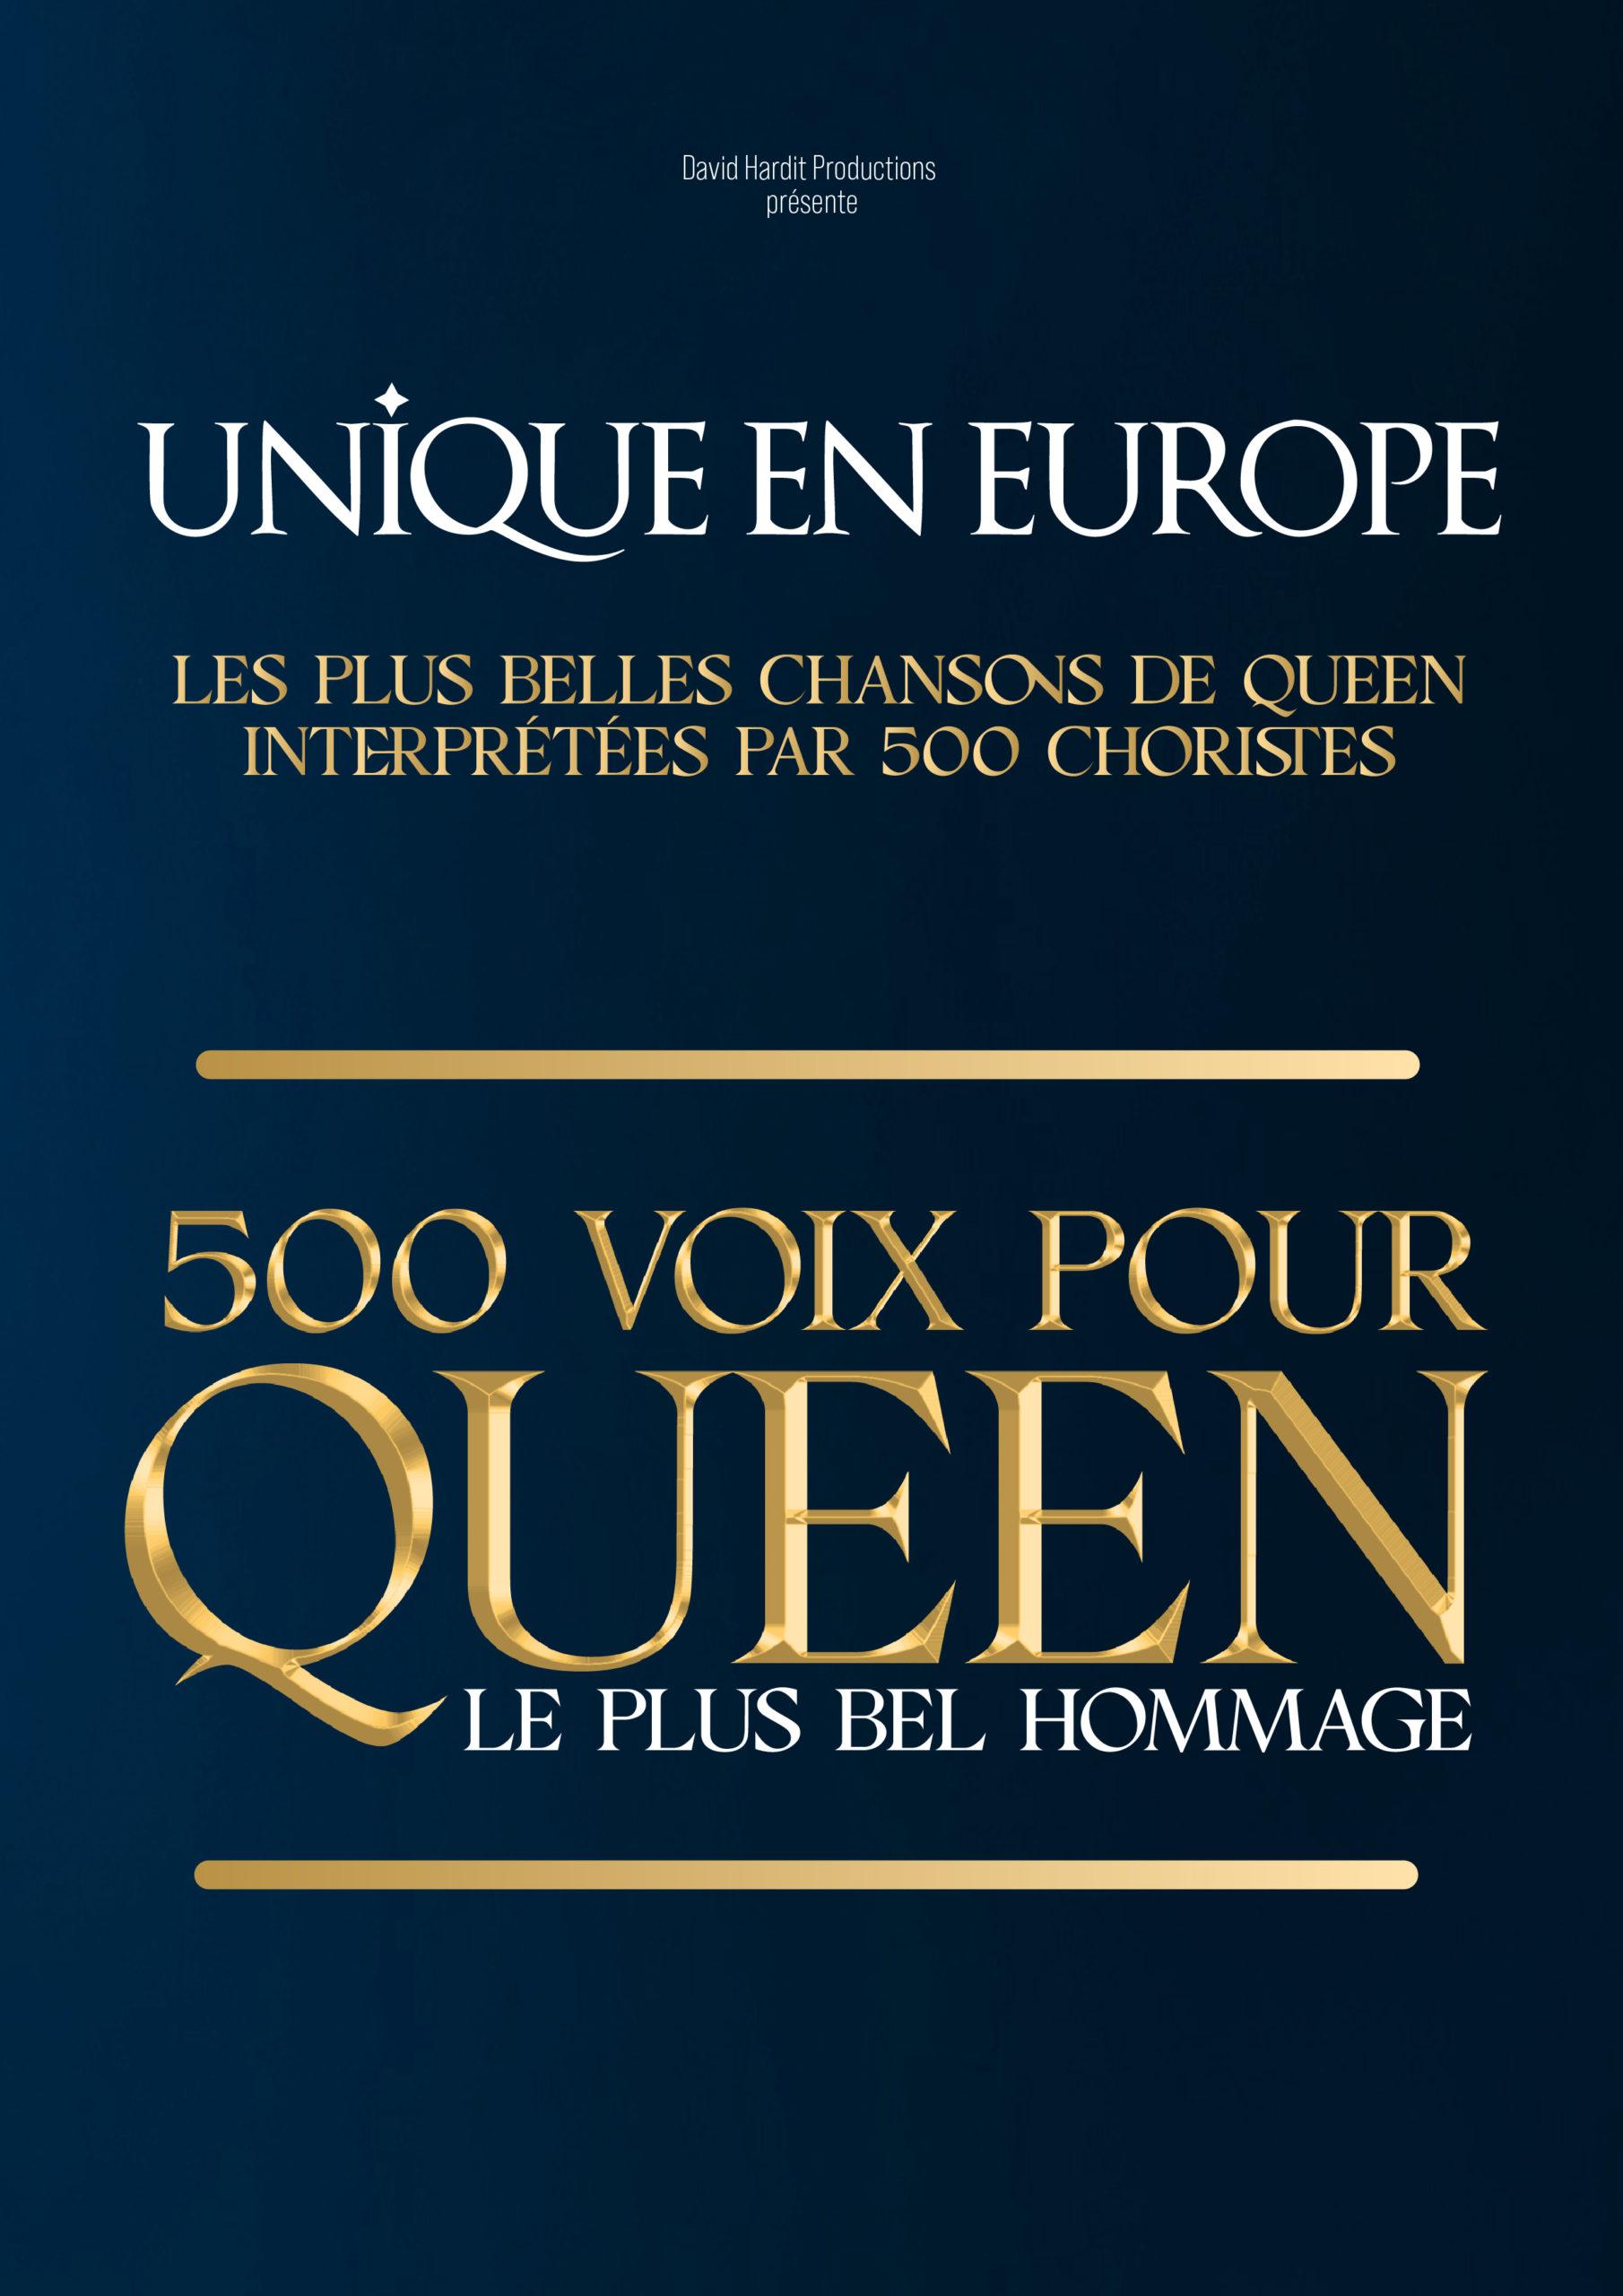 500 voix pour queen - Palais Nikaïa - Nice (06)